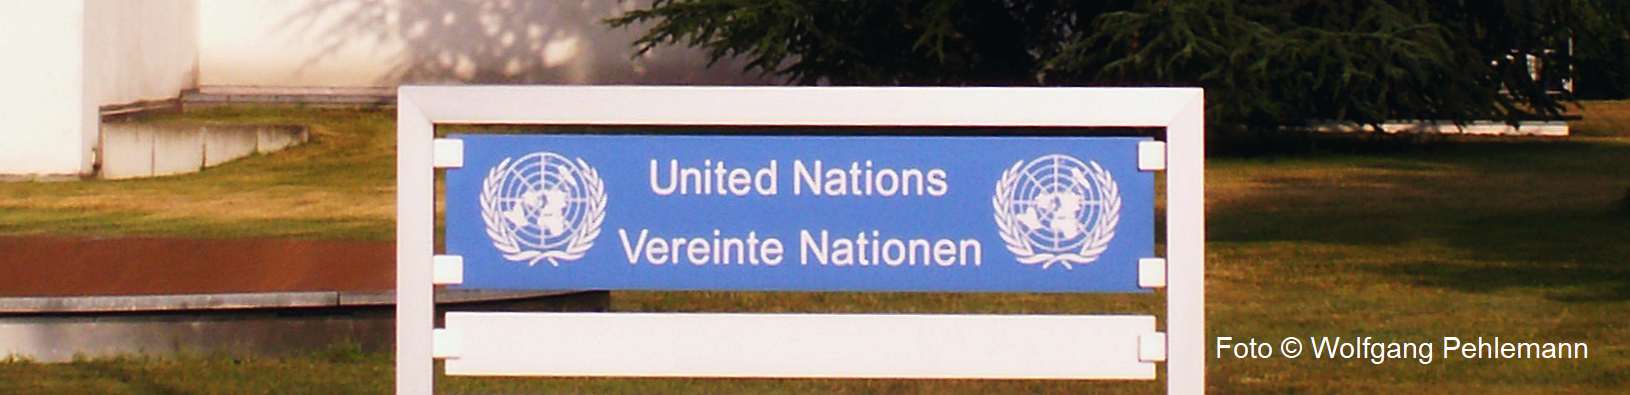 United Nations Organization - UN - vereinte-nationen-foto-wolfgang-pehlemann-pict0034-.jpg